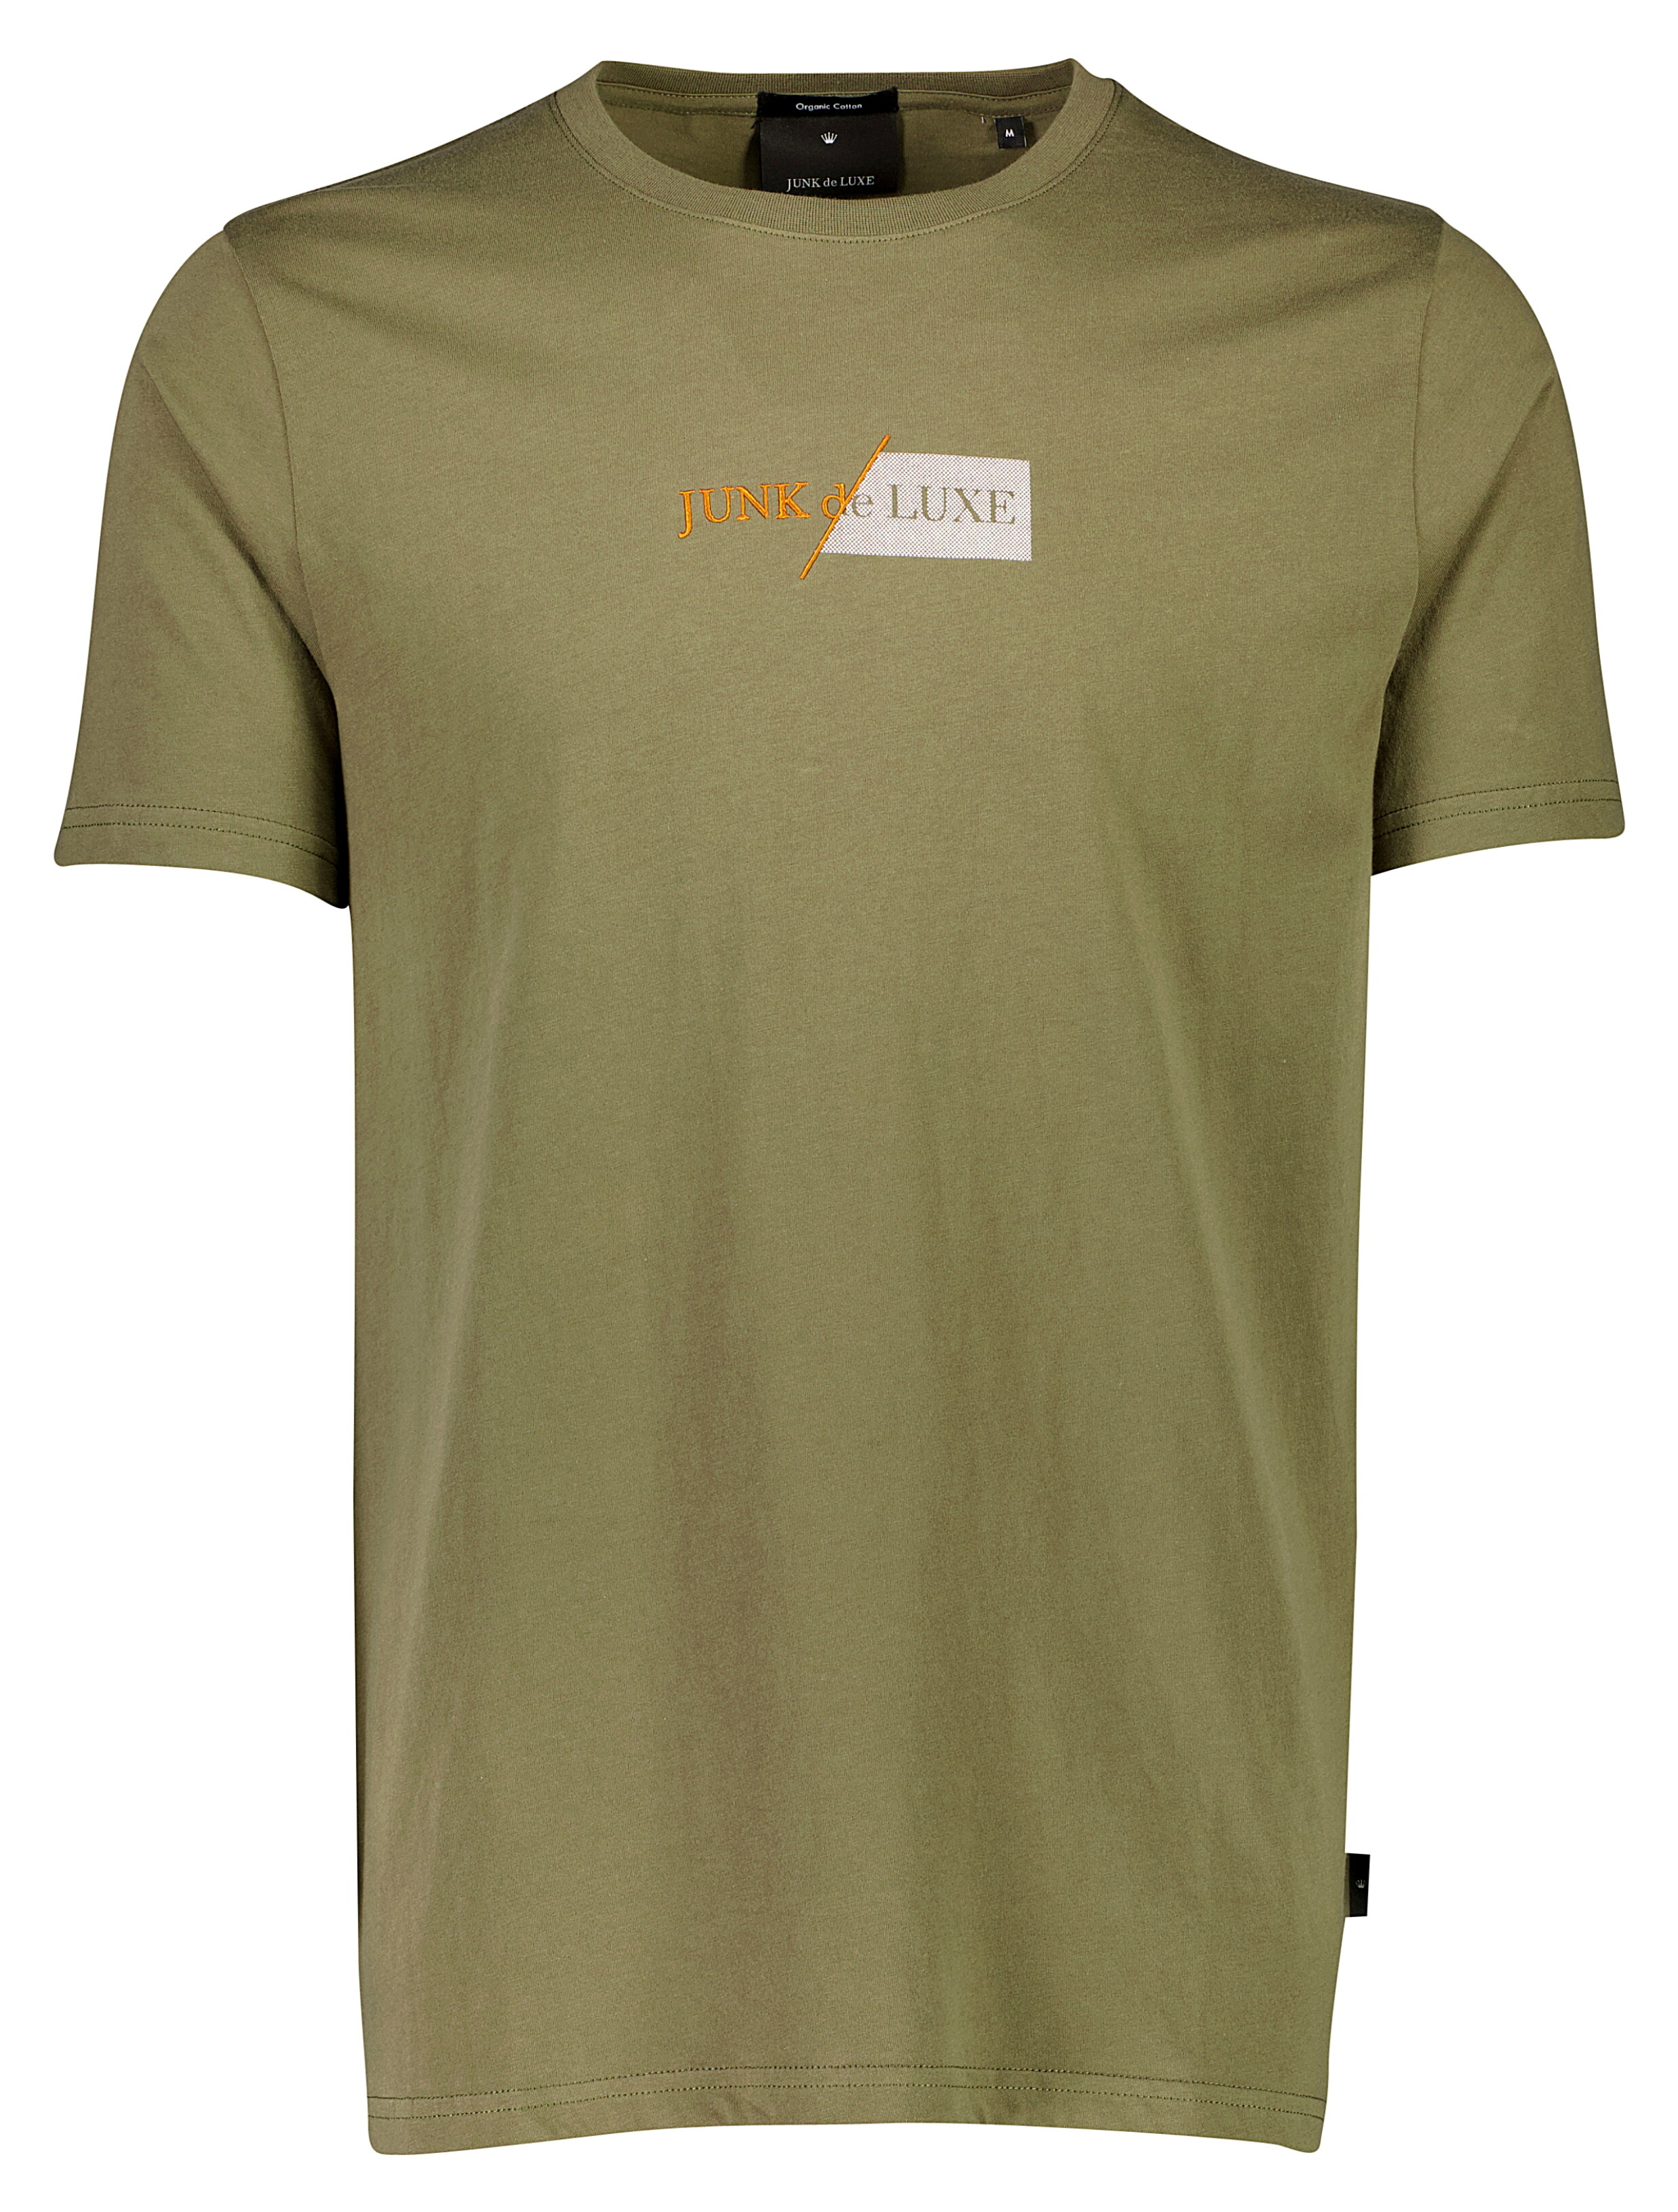 Junk de Luxe T-shirt grön / army